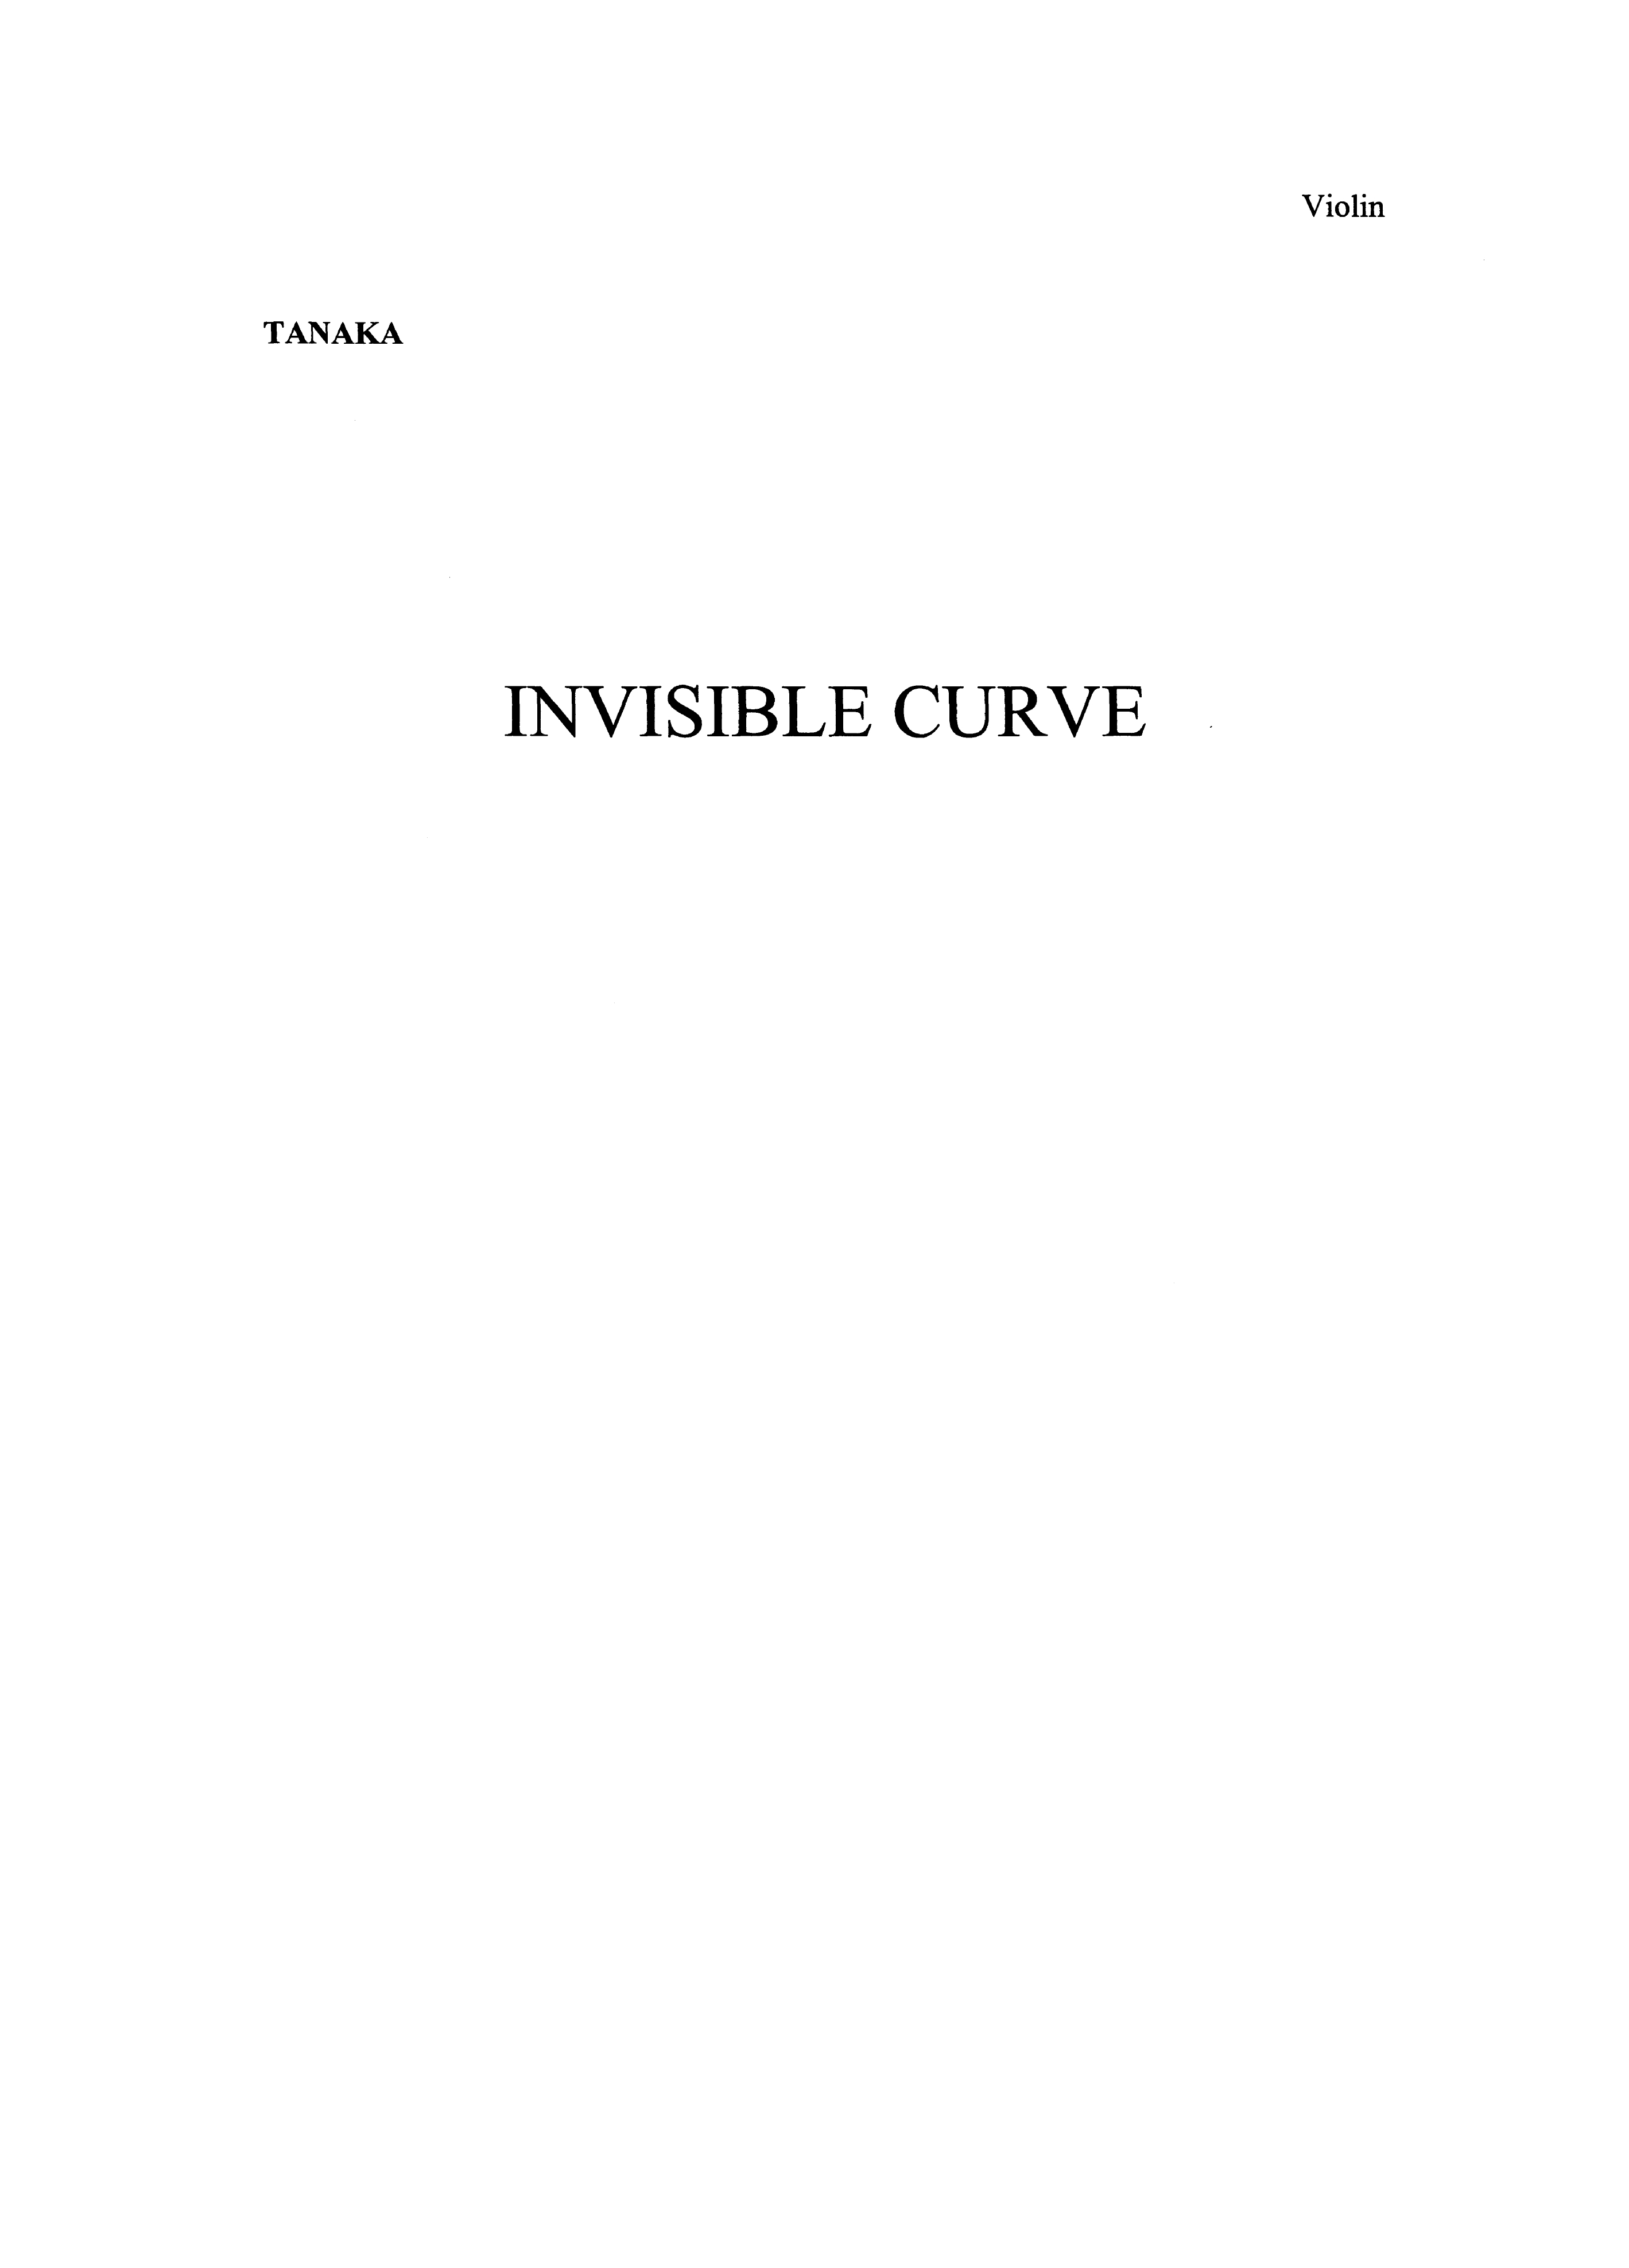 Karen Tanaka: Invisible Curve (Parts): Chamber Ensemble: Parts